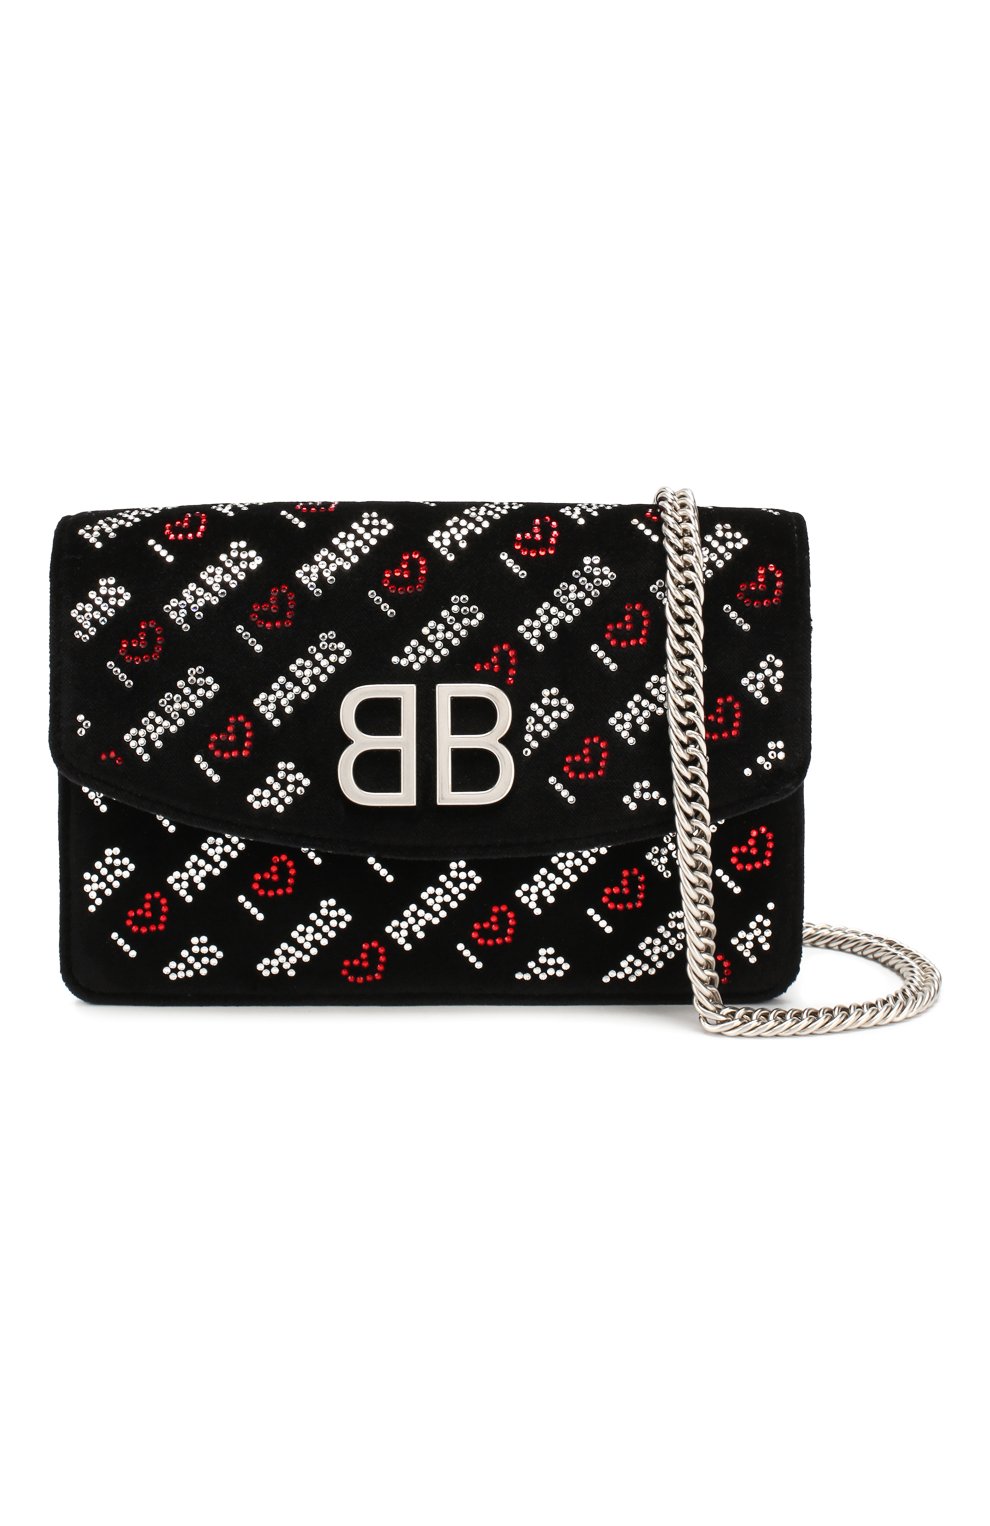 Женская черная сумка bb BALENCIAGA — купить в интернет-магазине ЦУМ